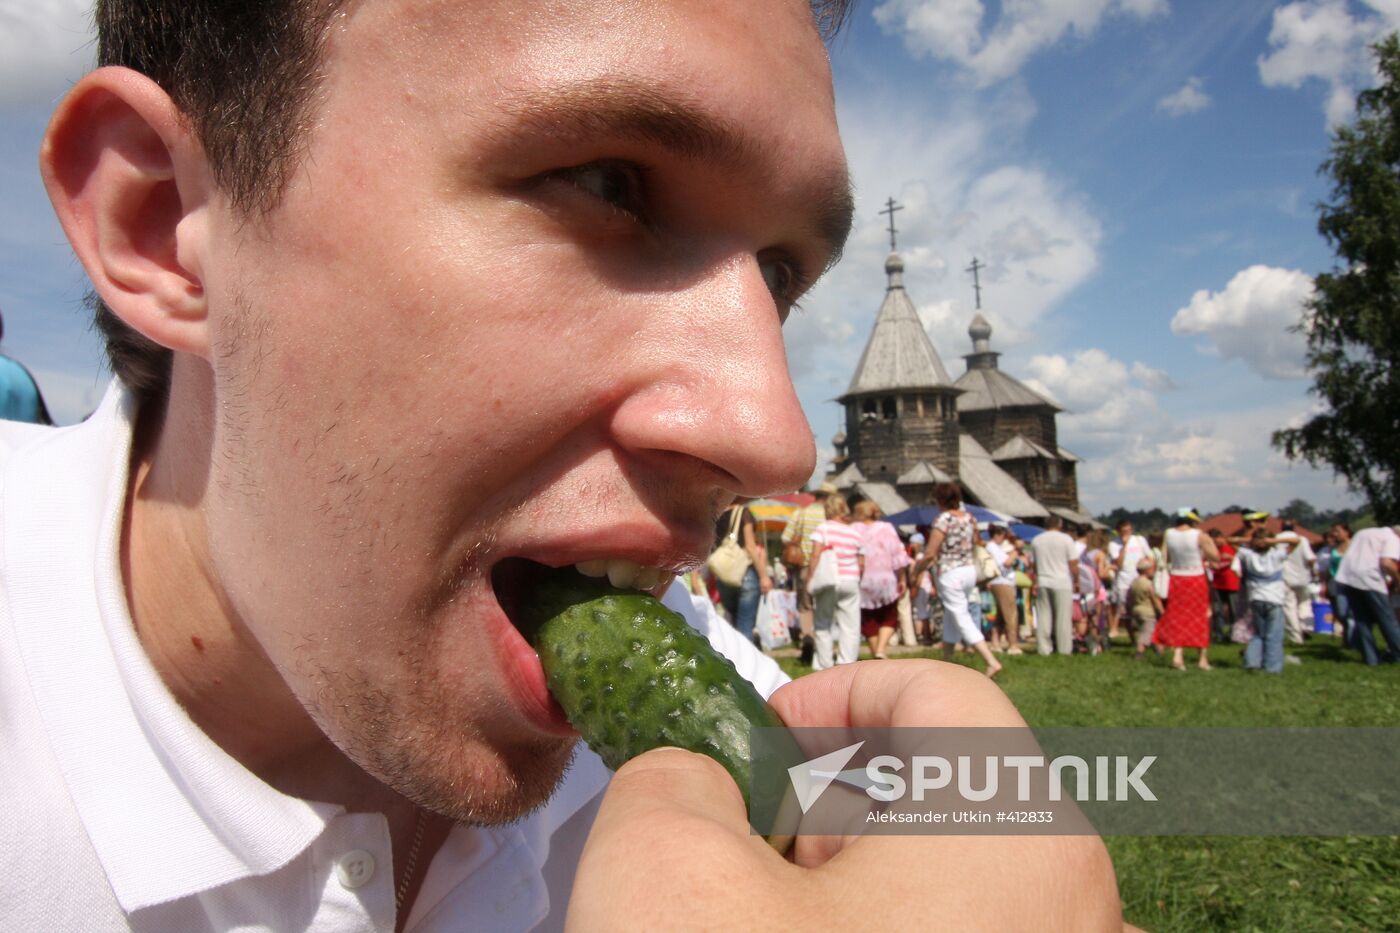 Cucumber Festival in Suzdal